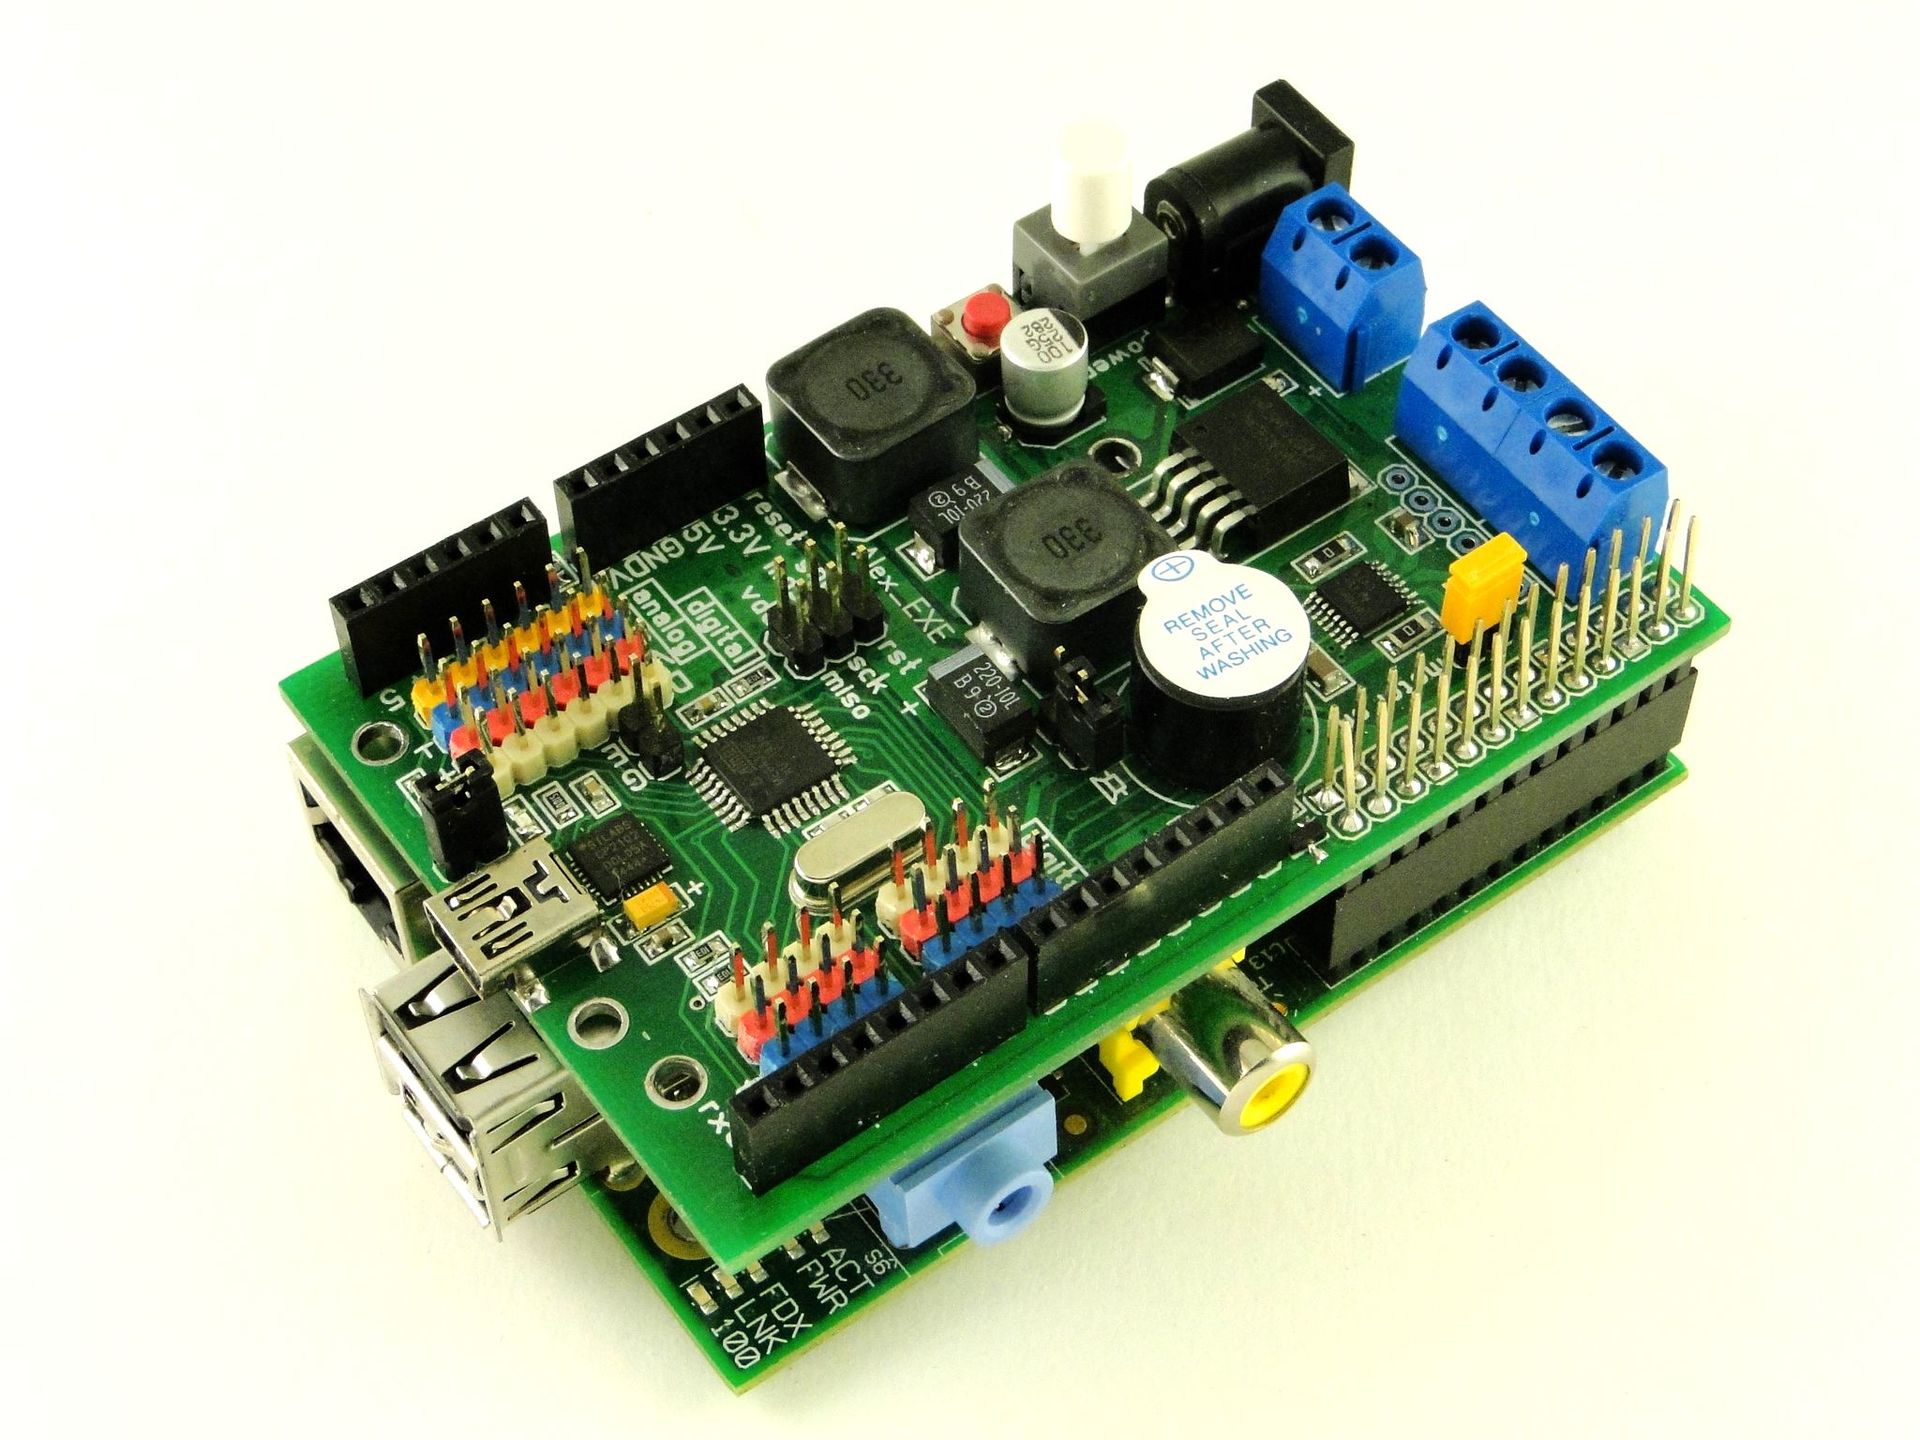 [Питер]Программируем Arduino: Основы работы со скетчами